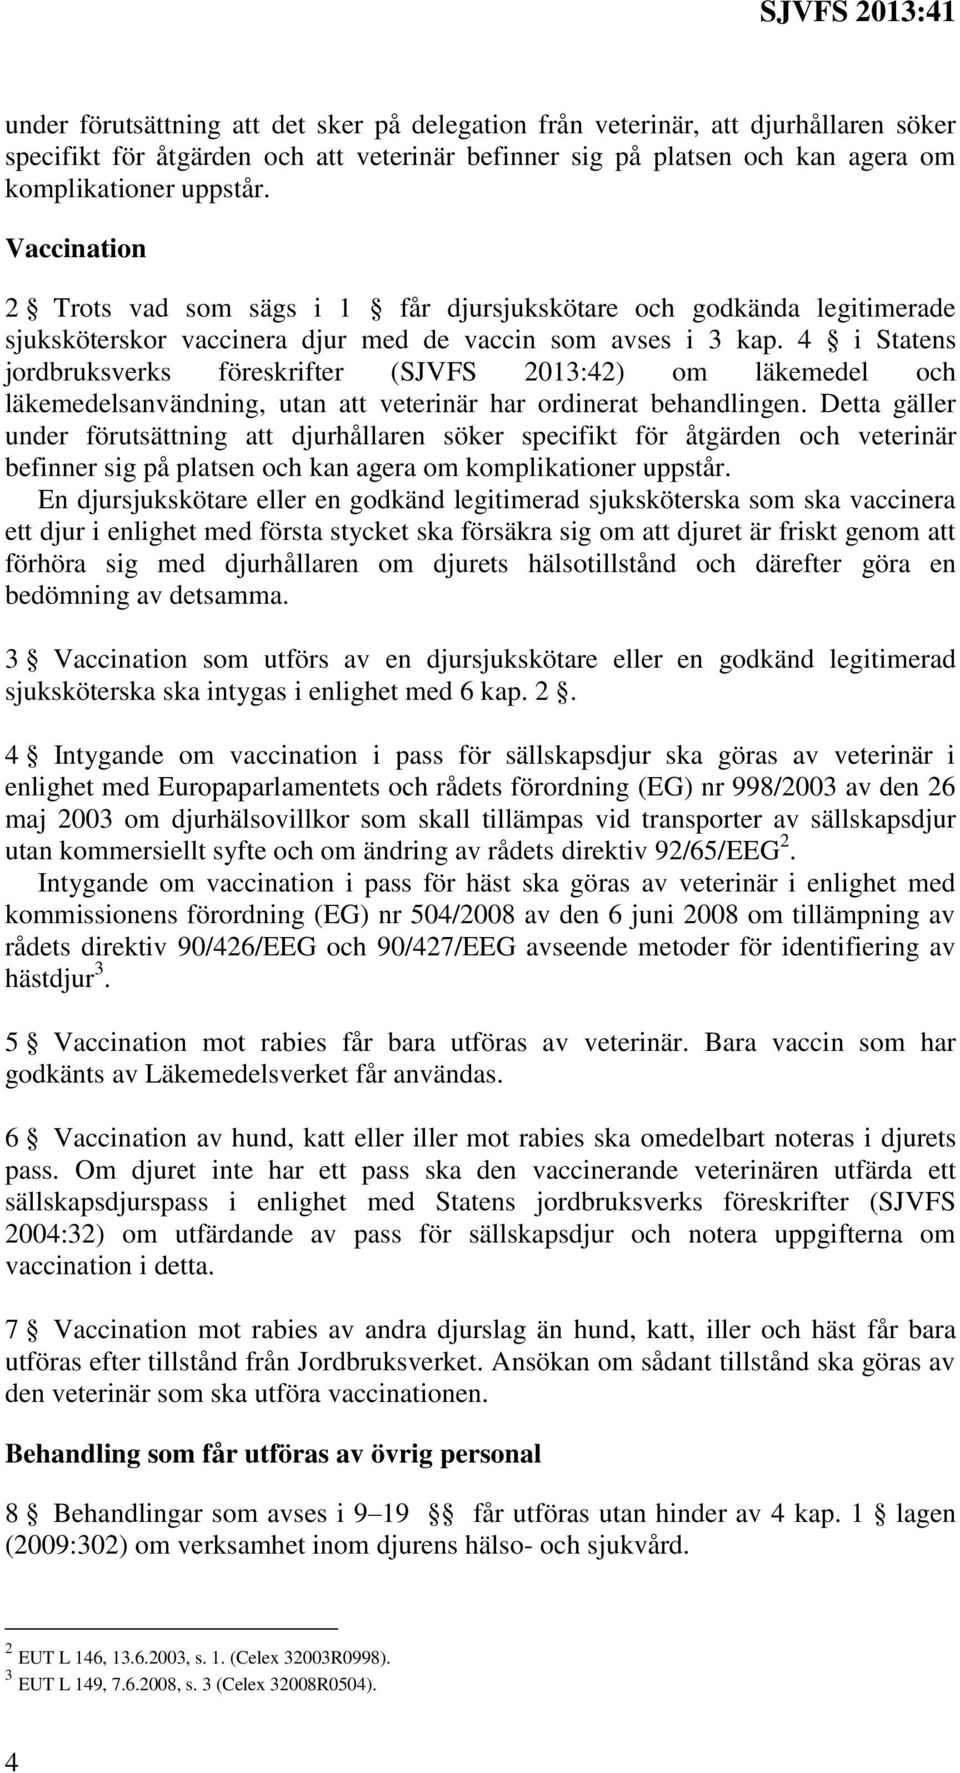 4 i Statens jordbruksverks föreskrifter (SJVFS 2013:42) om läkemedel och läkemedelsanvändning, utan att veterinär har ordinerat behandlingen.